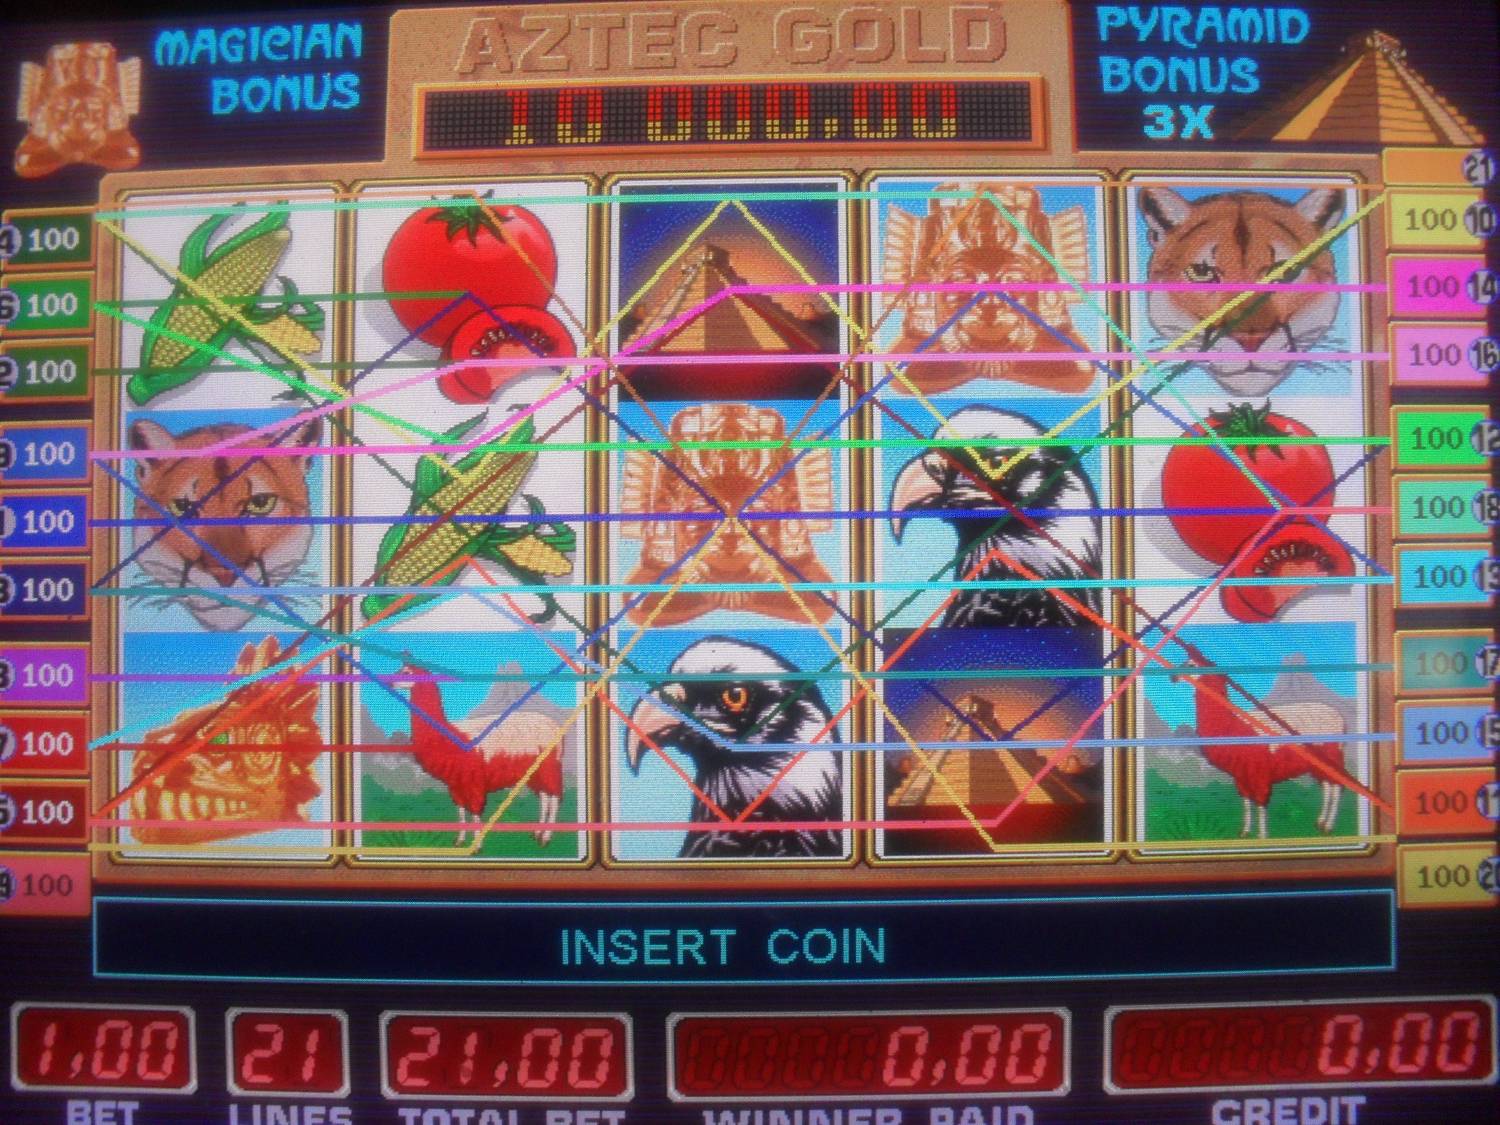 был выявлен факт незаконного проведения азартных игр через интернет